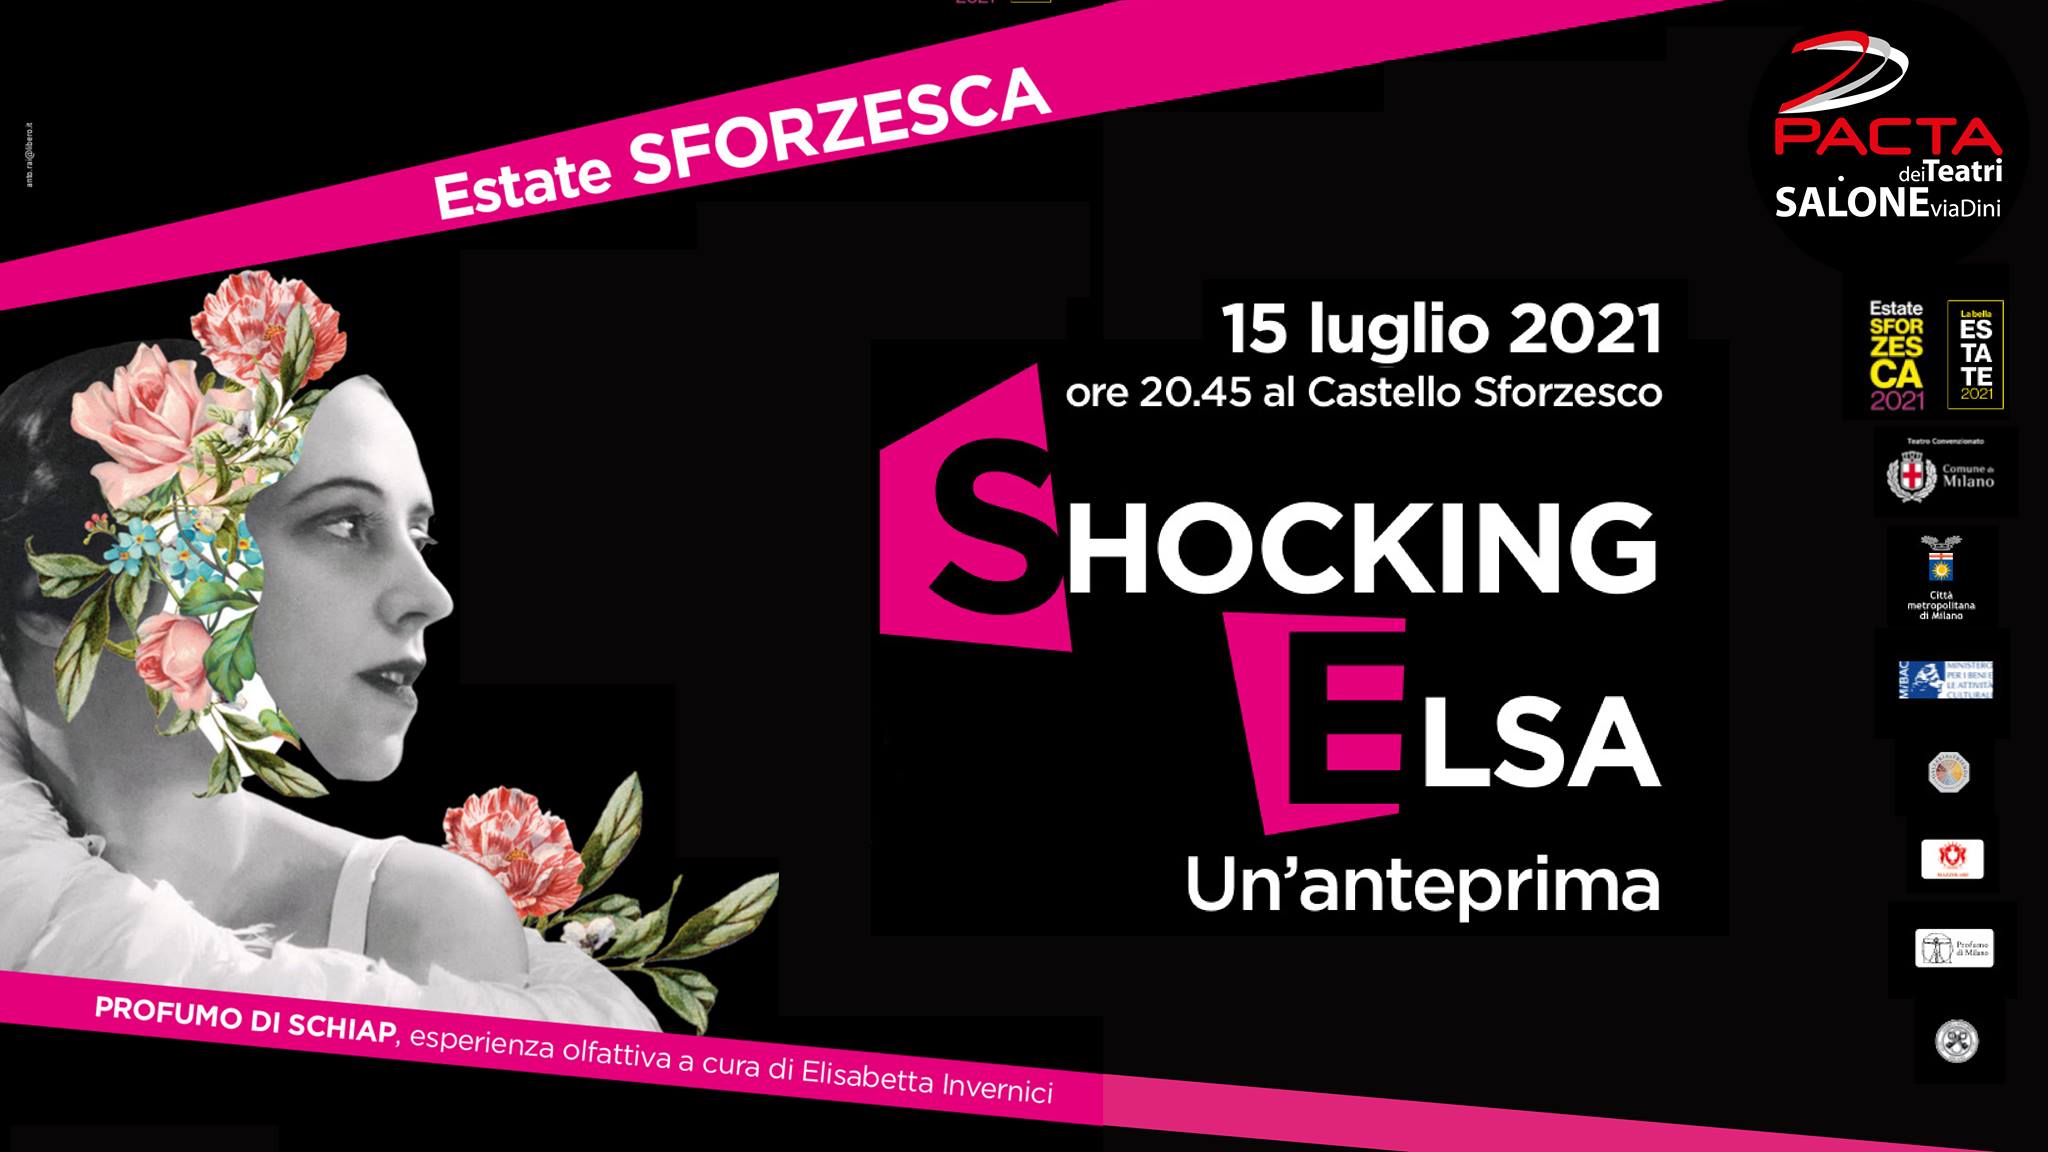 SHOCKING ELSA - Un\'anteprima all\'Estate Sforzesca